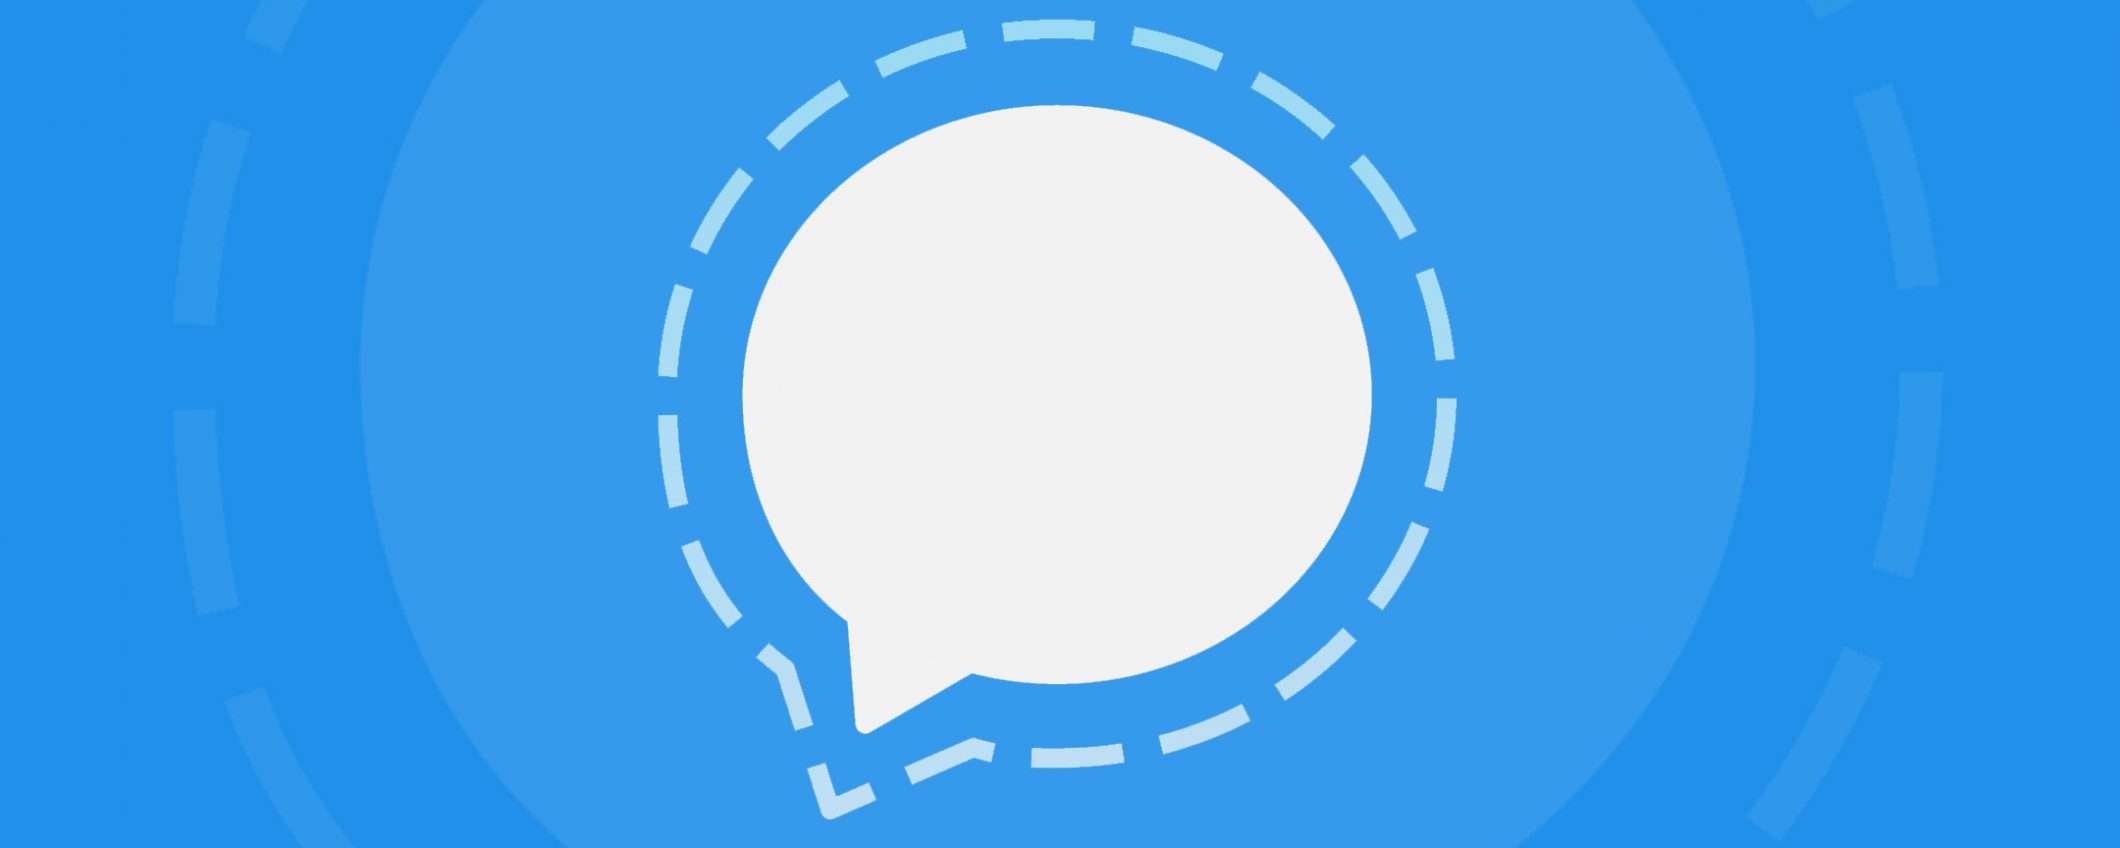 Signal, utenti in aumento grazie a WhatsApp